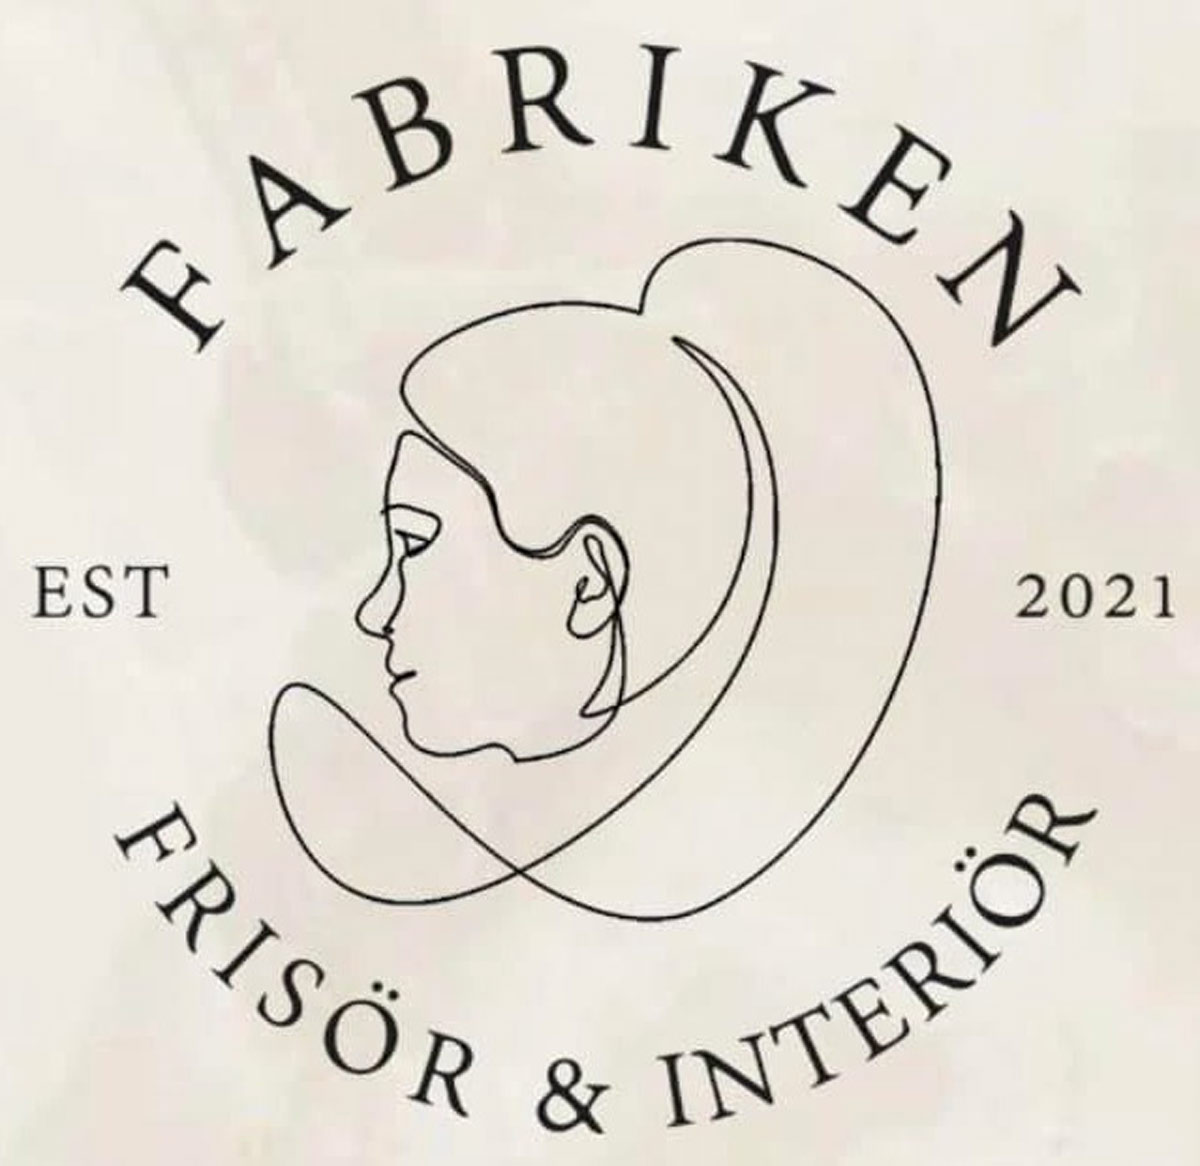 Fabriken Frisör & Interiör logotyp